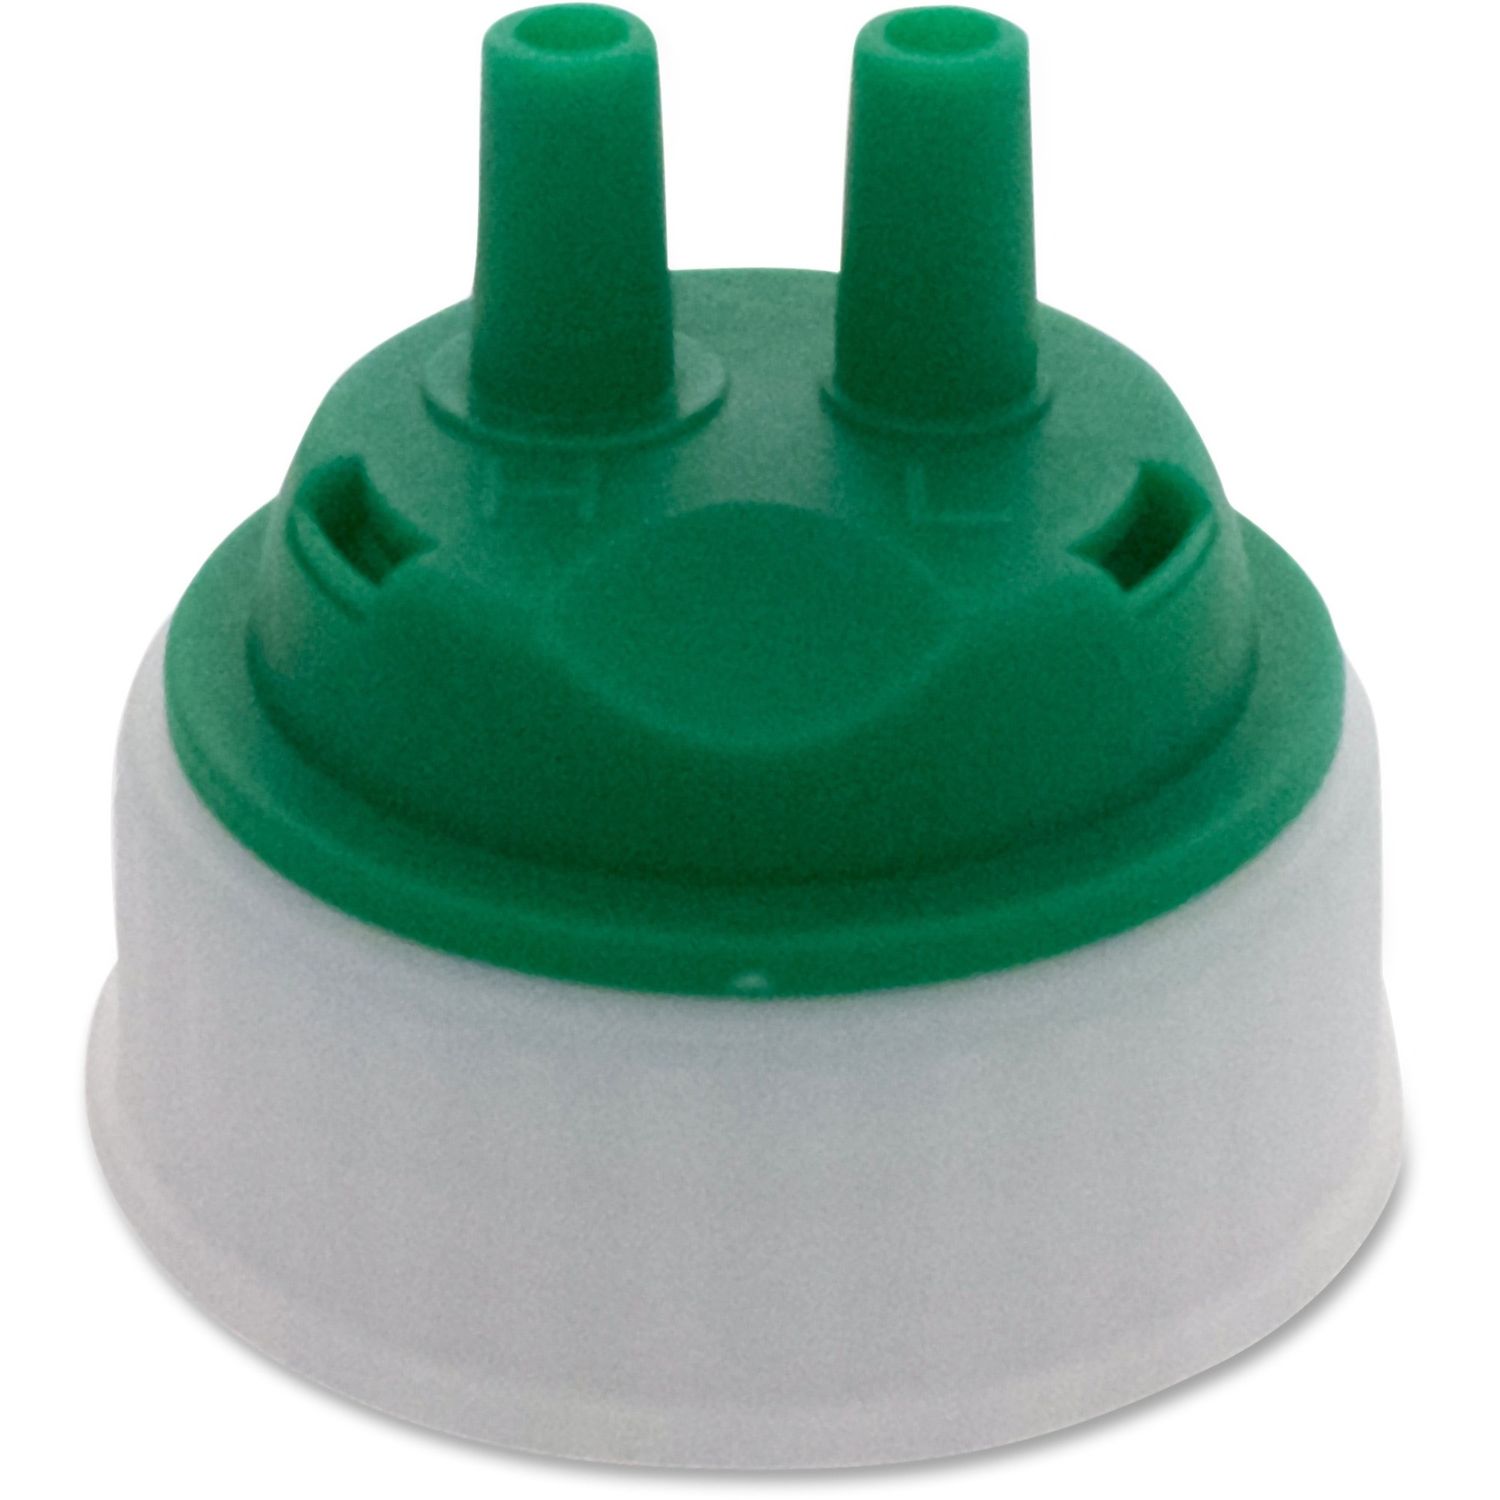 EZ-Mix Dispenser Mating Cap 1 Each, Green